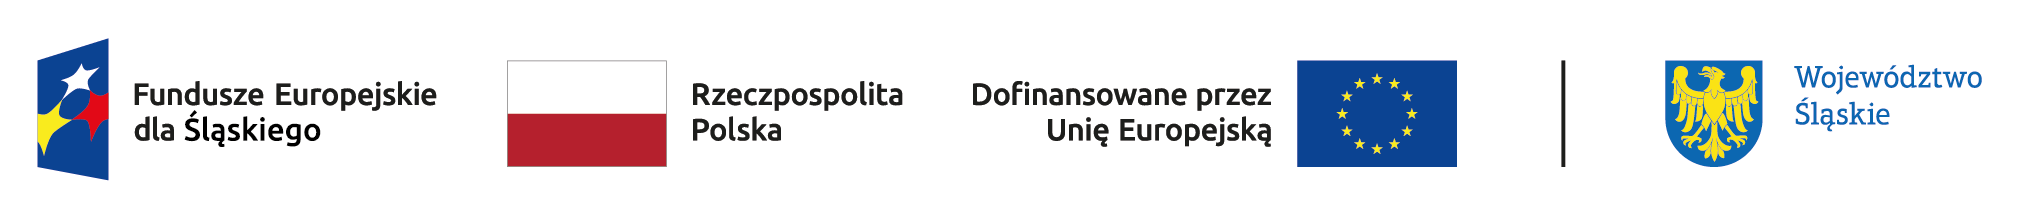 Loga do projektu Fundusze Europejskie dla Śląskiego, Rzeczypospolita Polska, Dofinansowane przez Unia Europejska, Województwo Śląskie